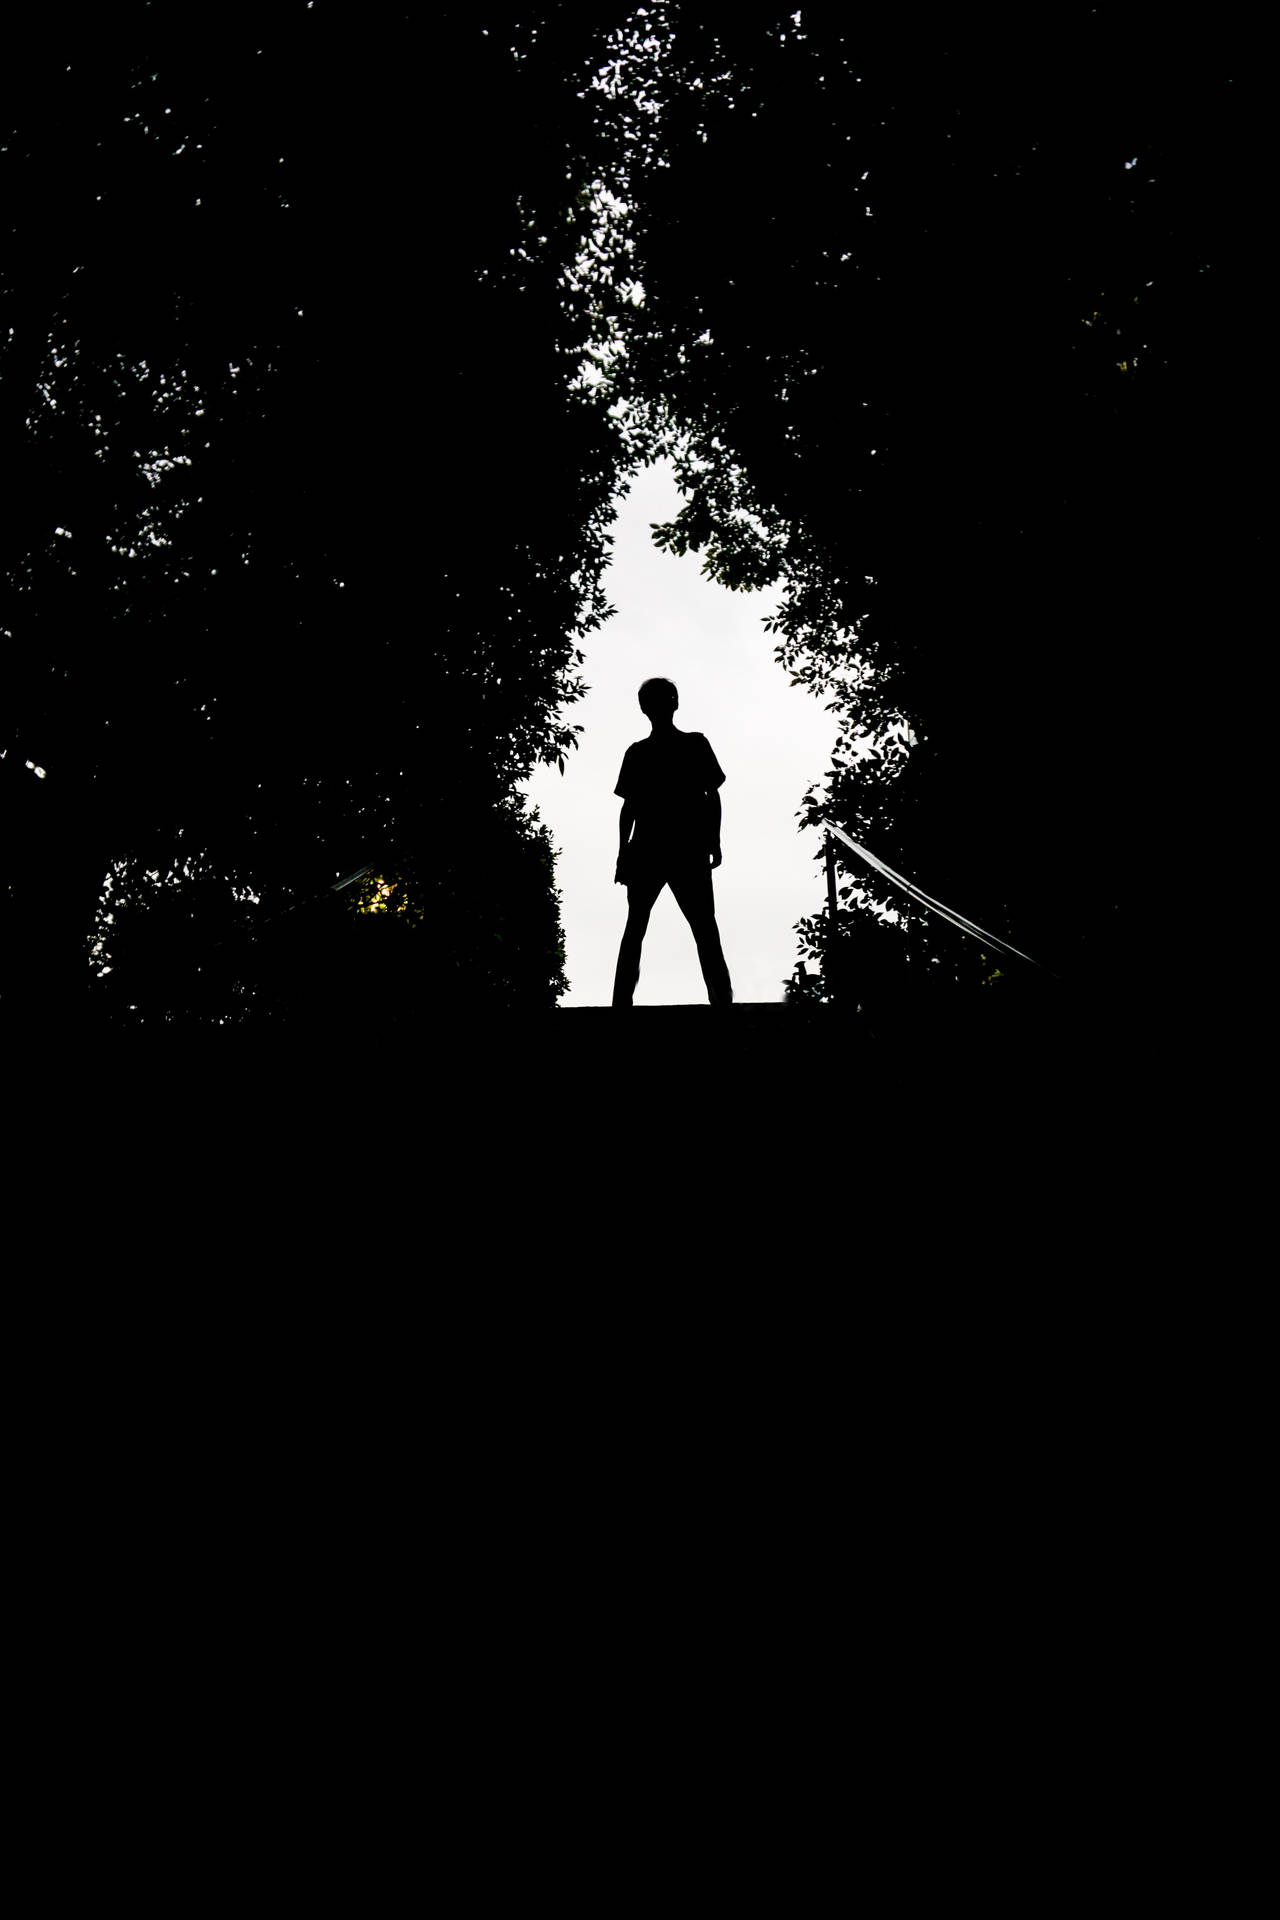 Boy Shadow Framed By Foliage Background